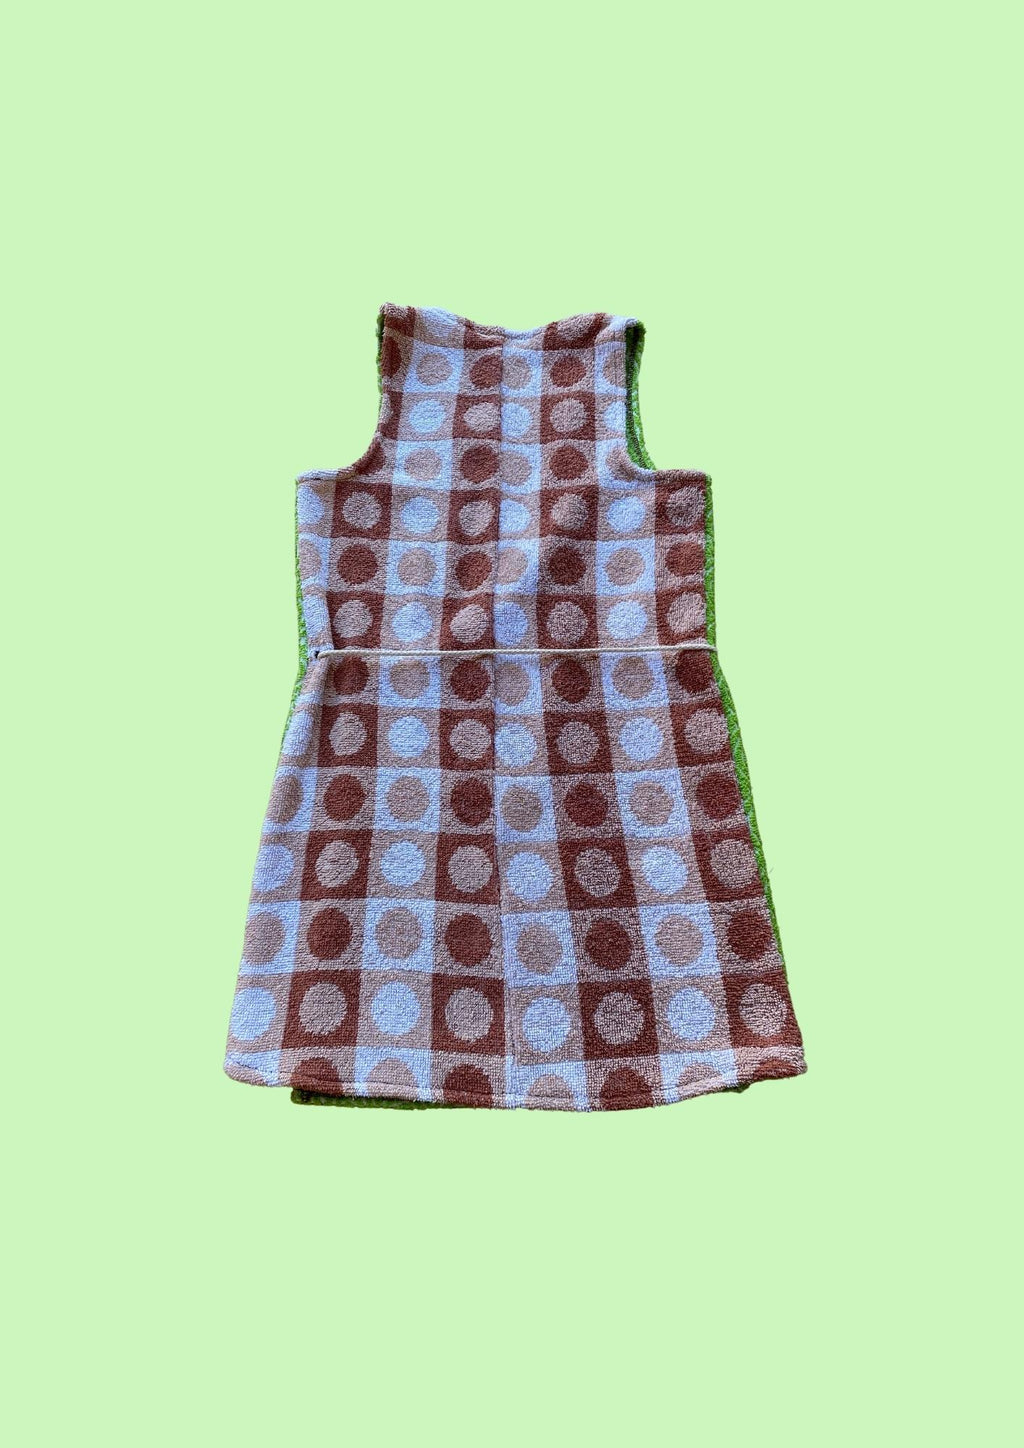 Towel Wrap Dress - Polka Dot